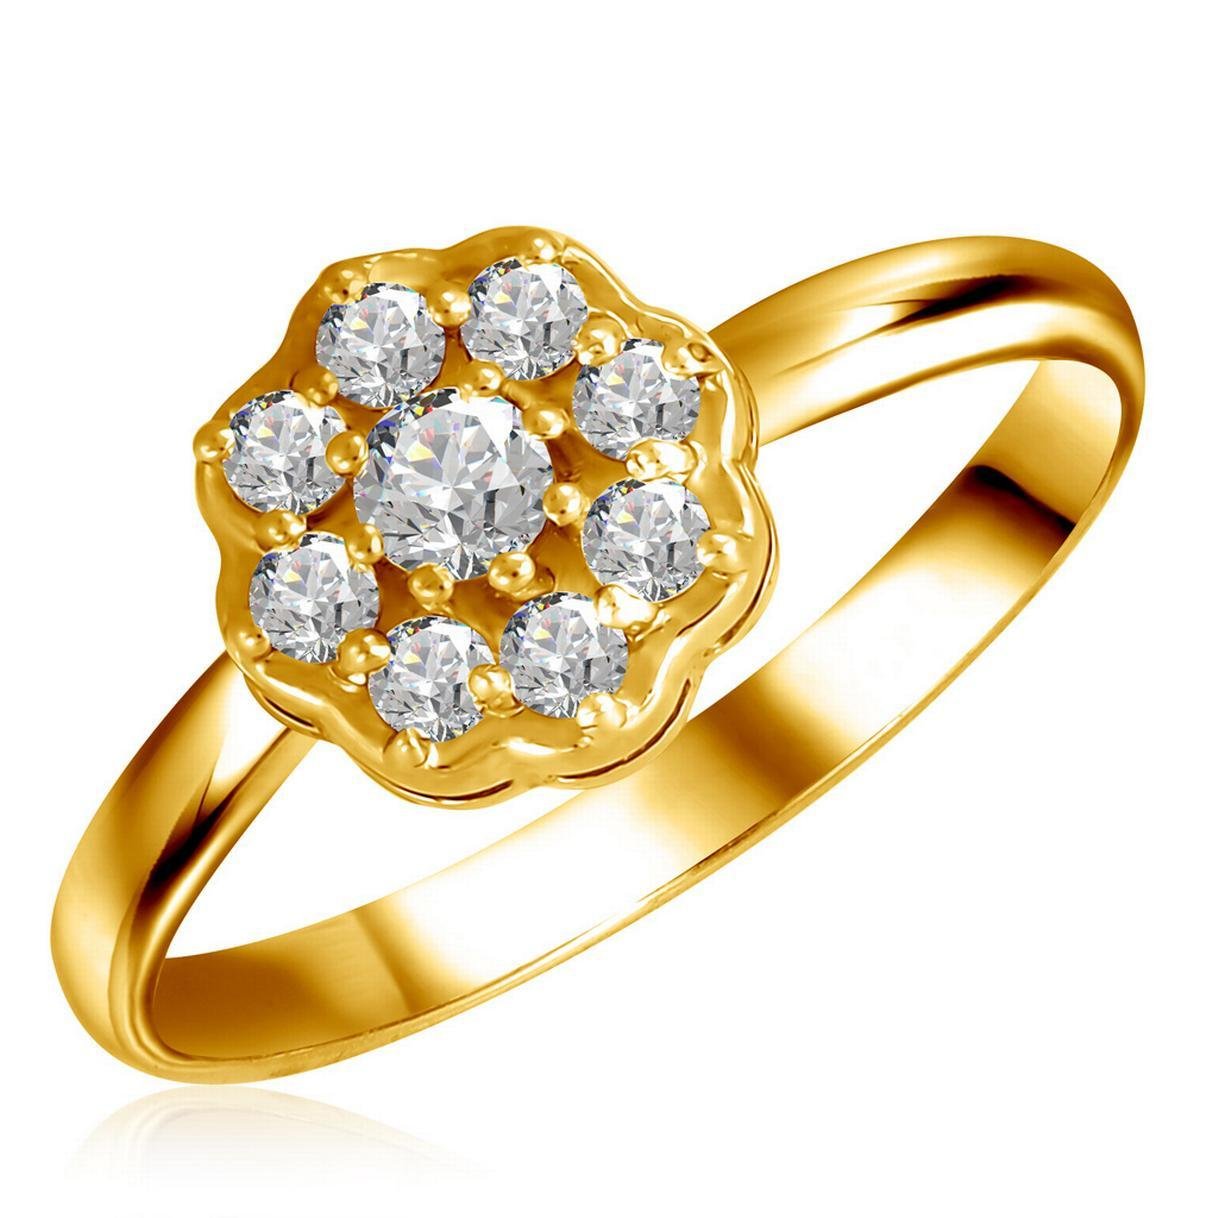 Ювелирное изделие кольцо с бриллиантом. Красивые кольца. Украшения с бриллиантами. Украшения из золота. Украшения из золота с бриллиантами.